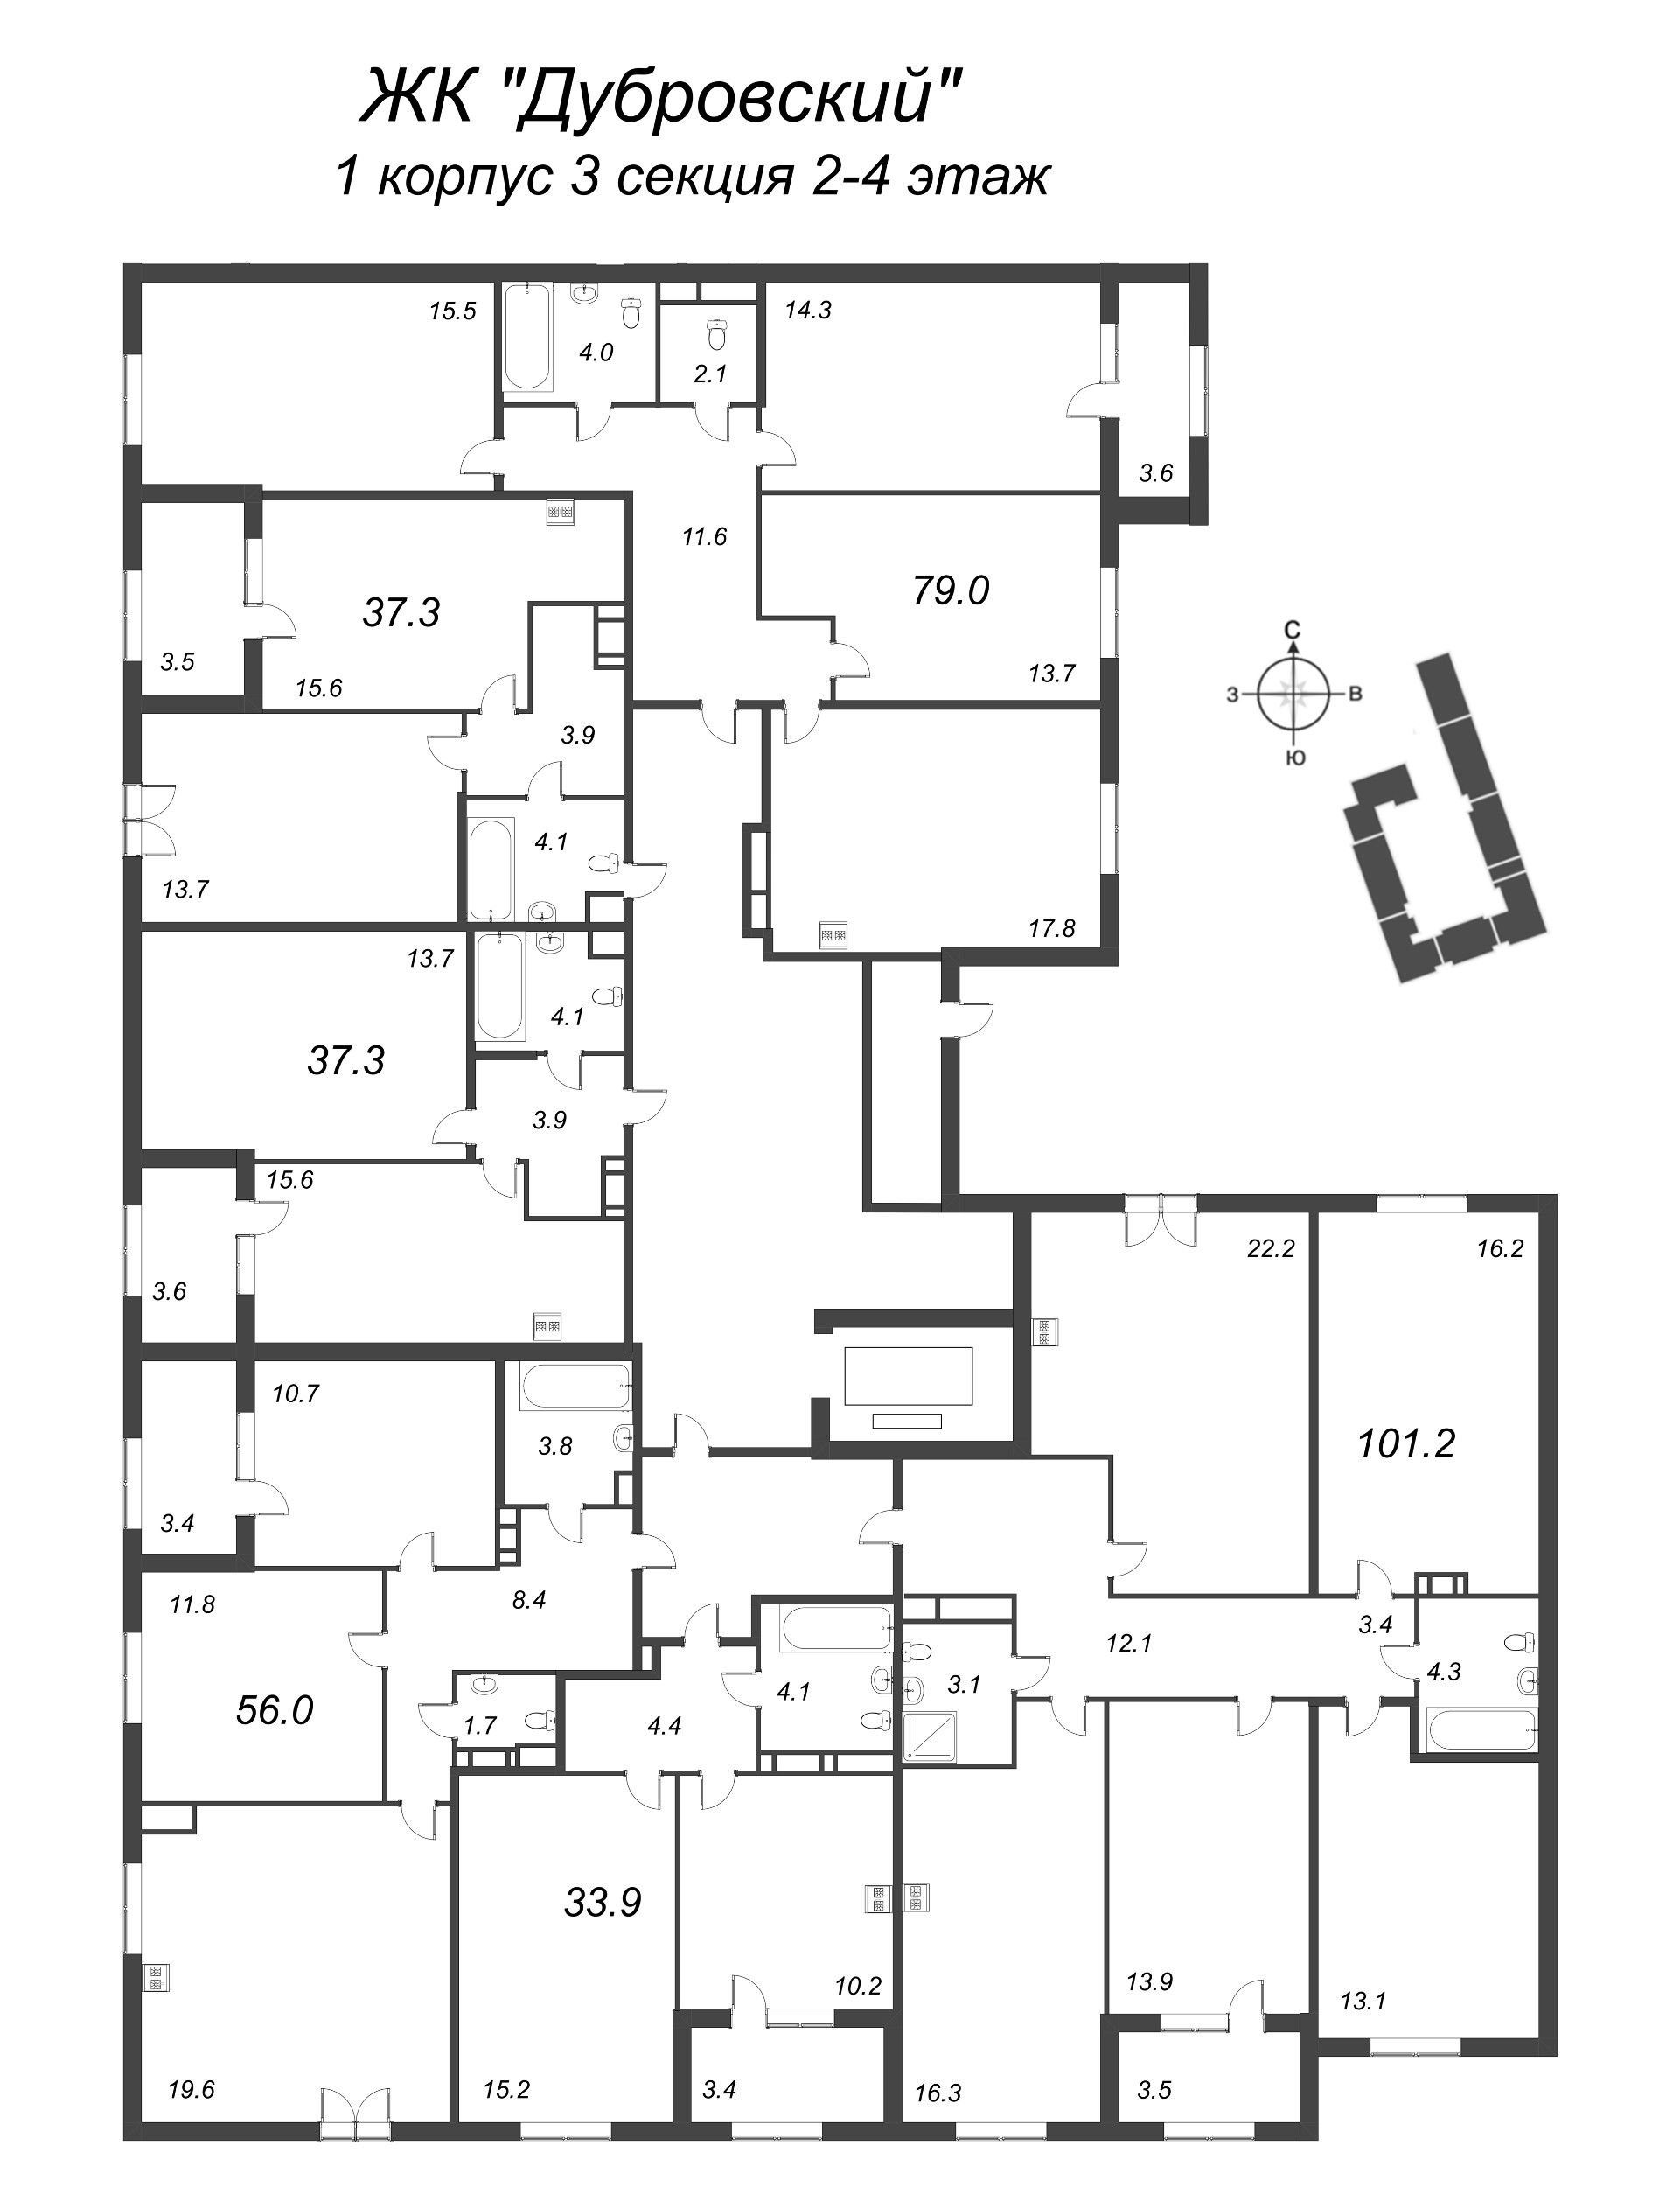 5-комнатная (Евро) квартира, 101.2 м² в ЖК "Дубровский" - планировка этажа